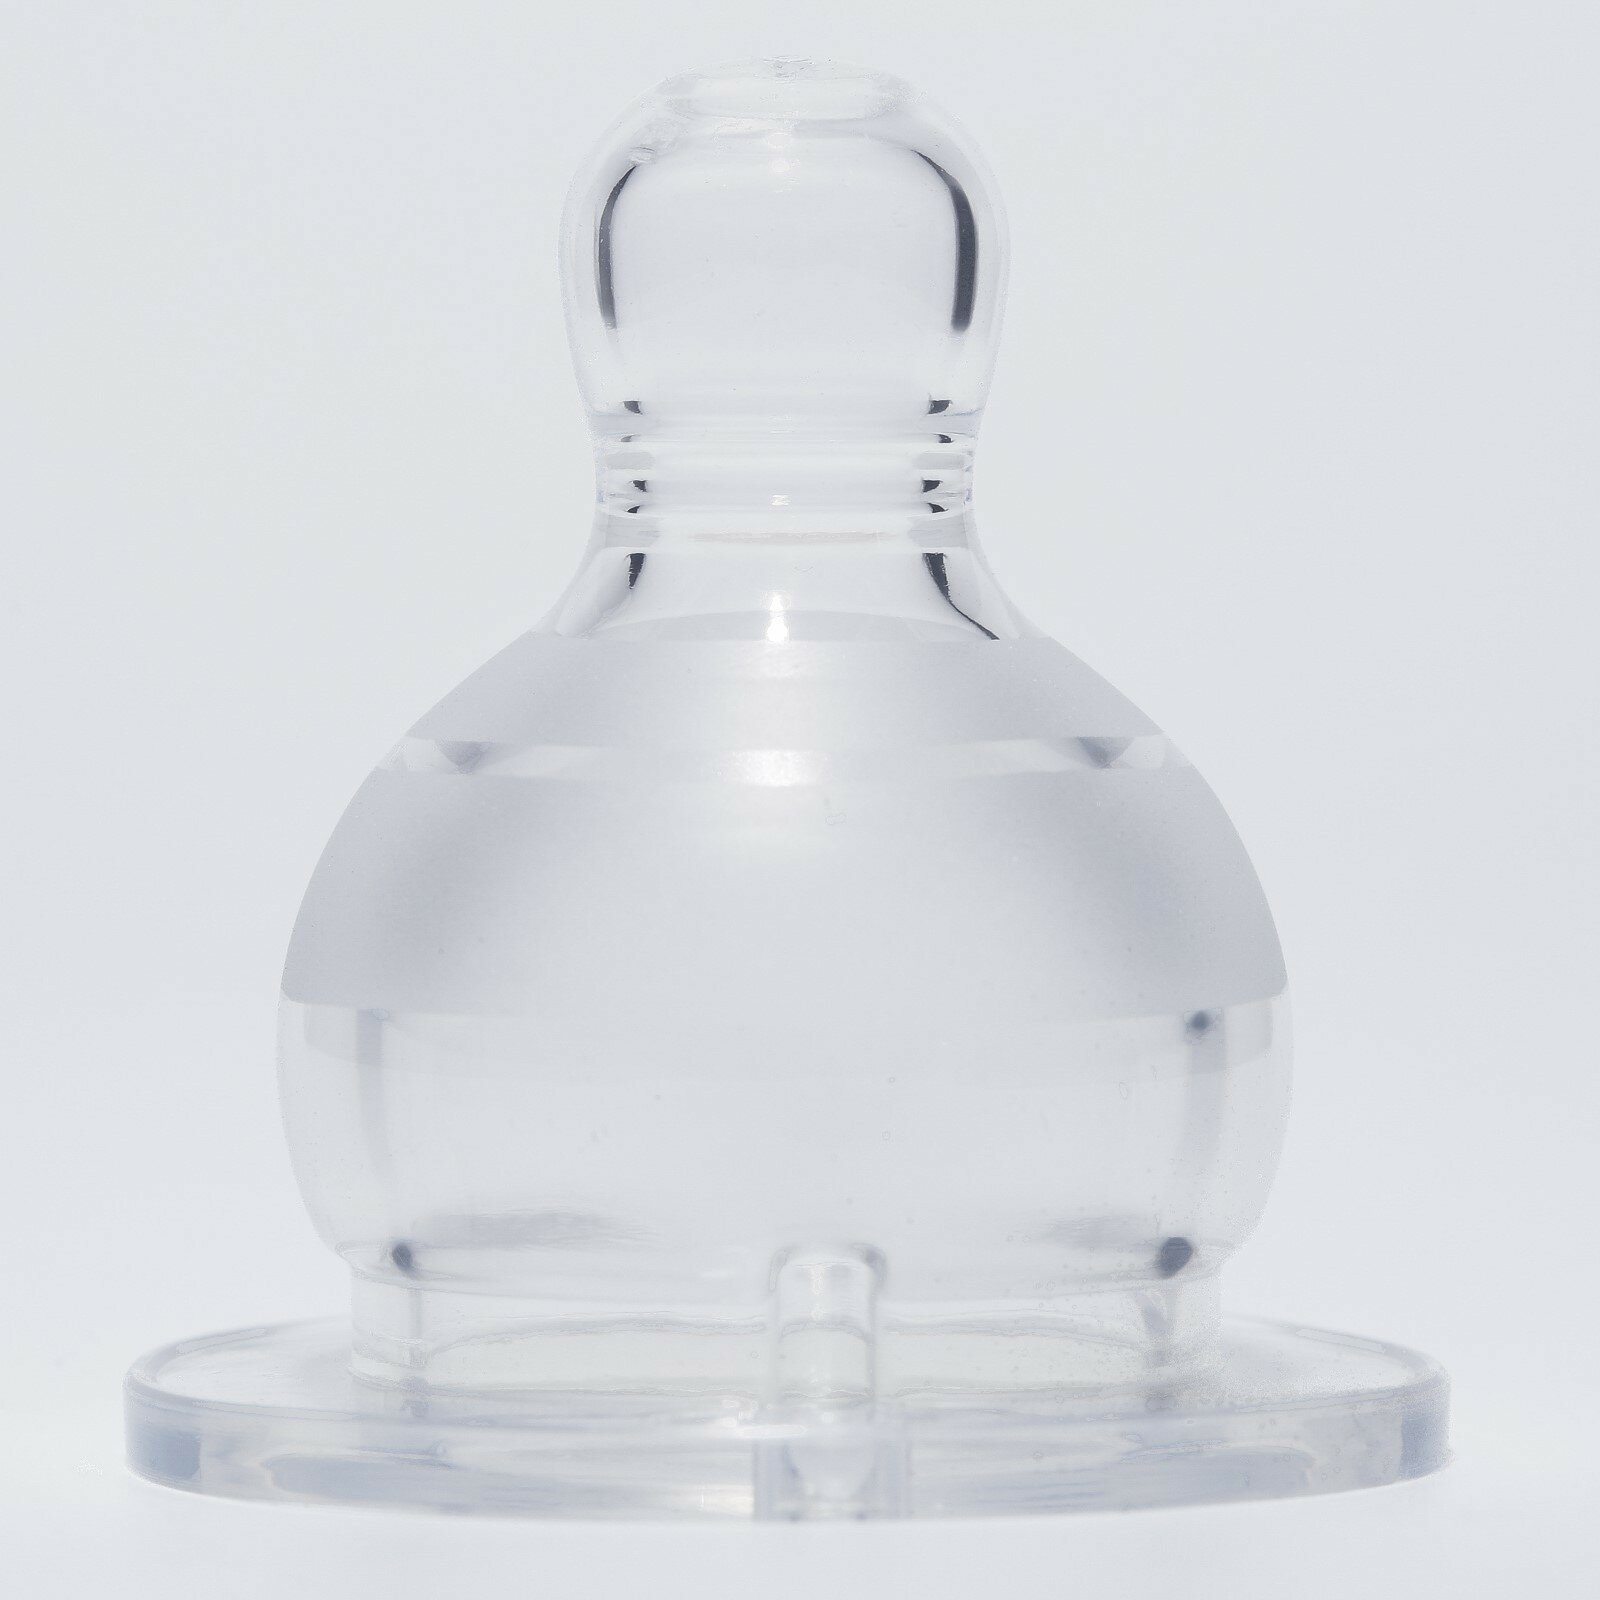 Соска для бутылочки, +6мес(Х), быстрый поток, классическое горло 35мм.